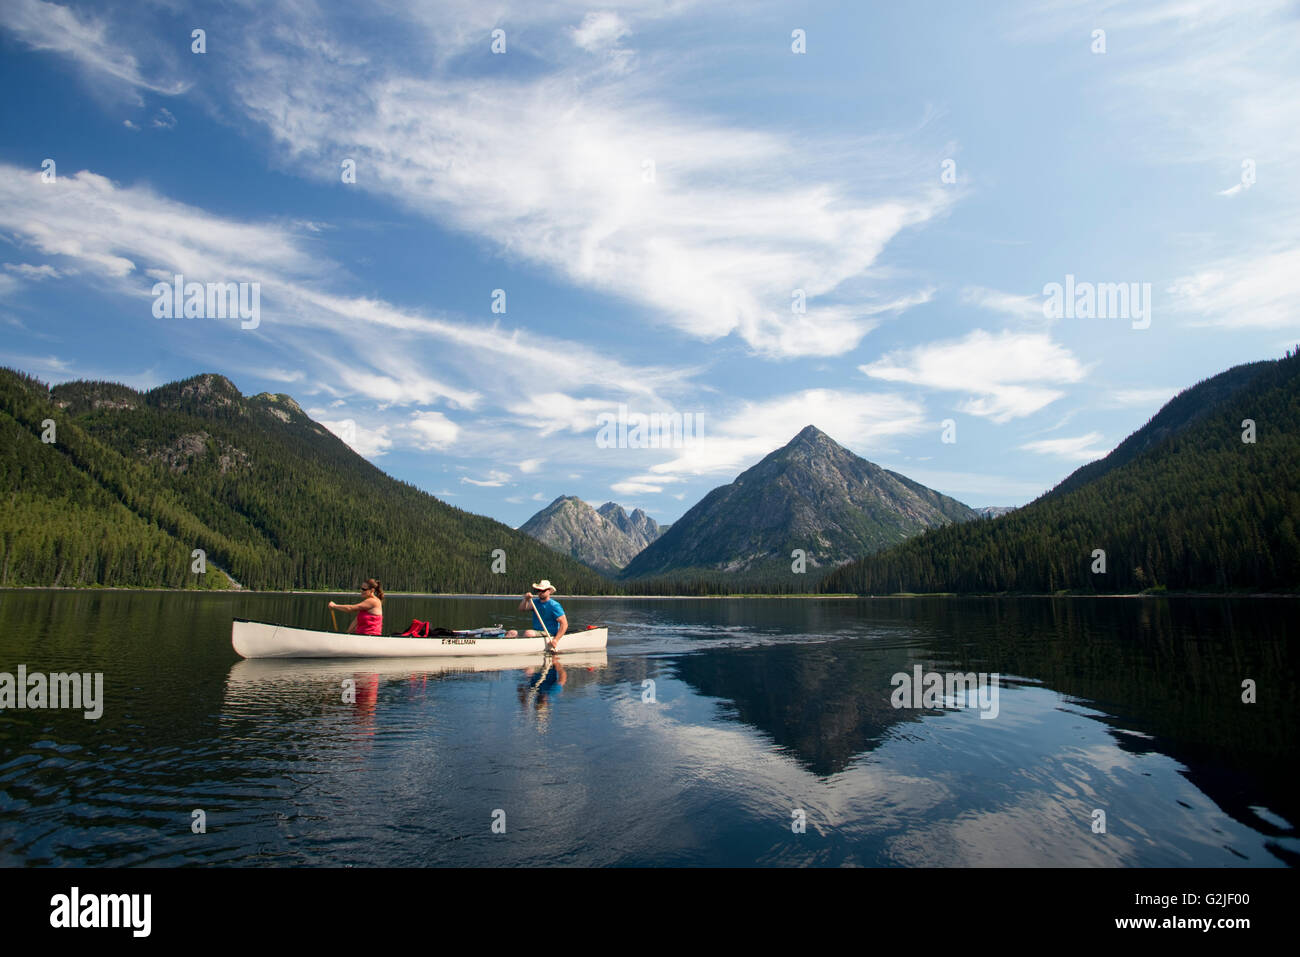 Canoa e campeggio sul braccio del nord del Lago Murtle, Grey Parco Provinciale, Blue River, British Columbia, Canada Foto Stock